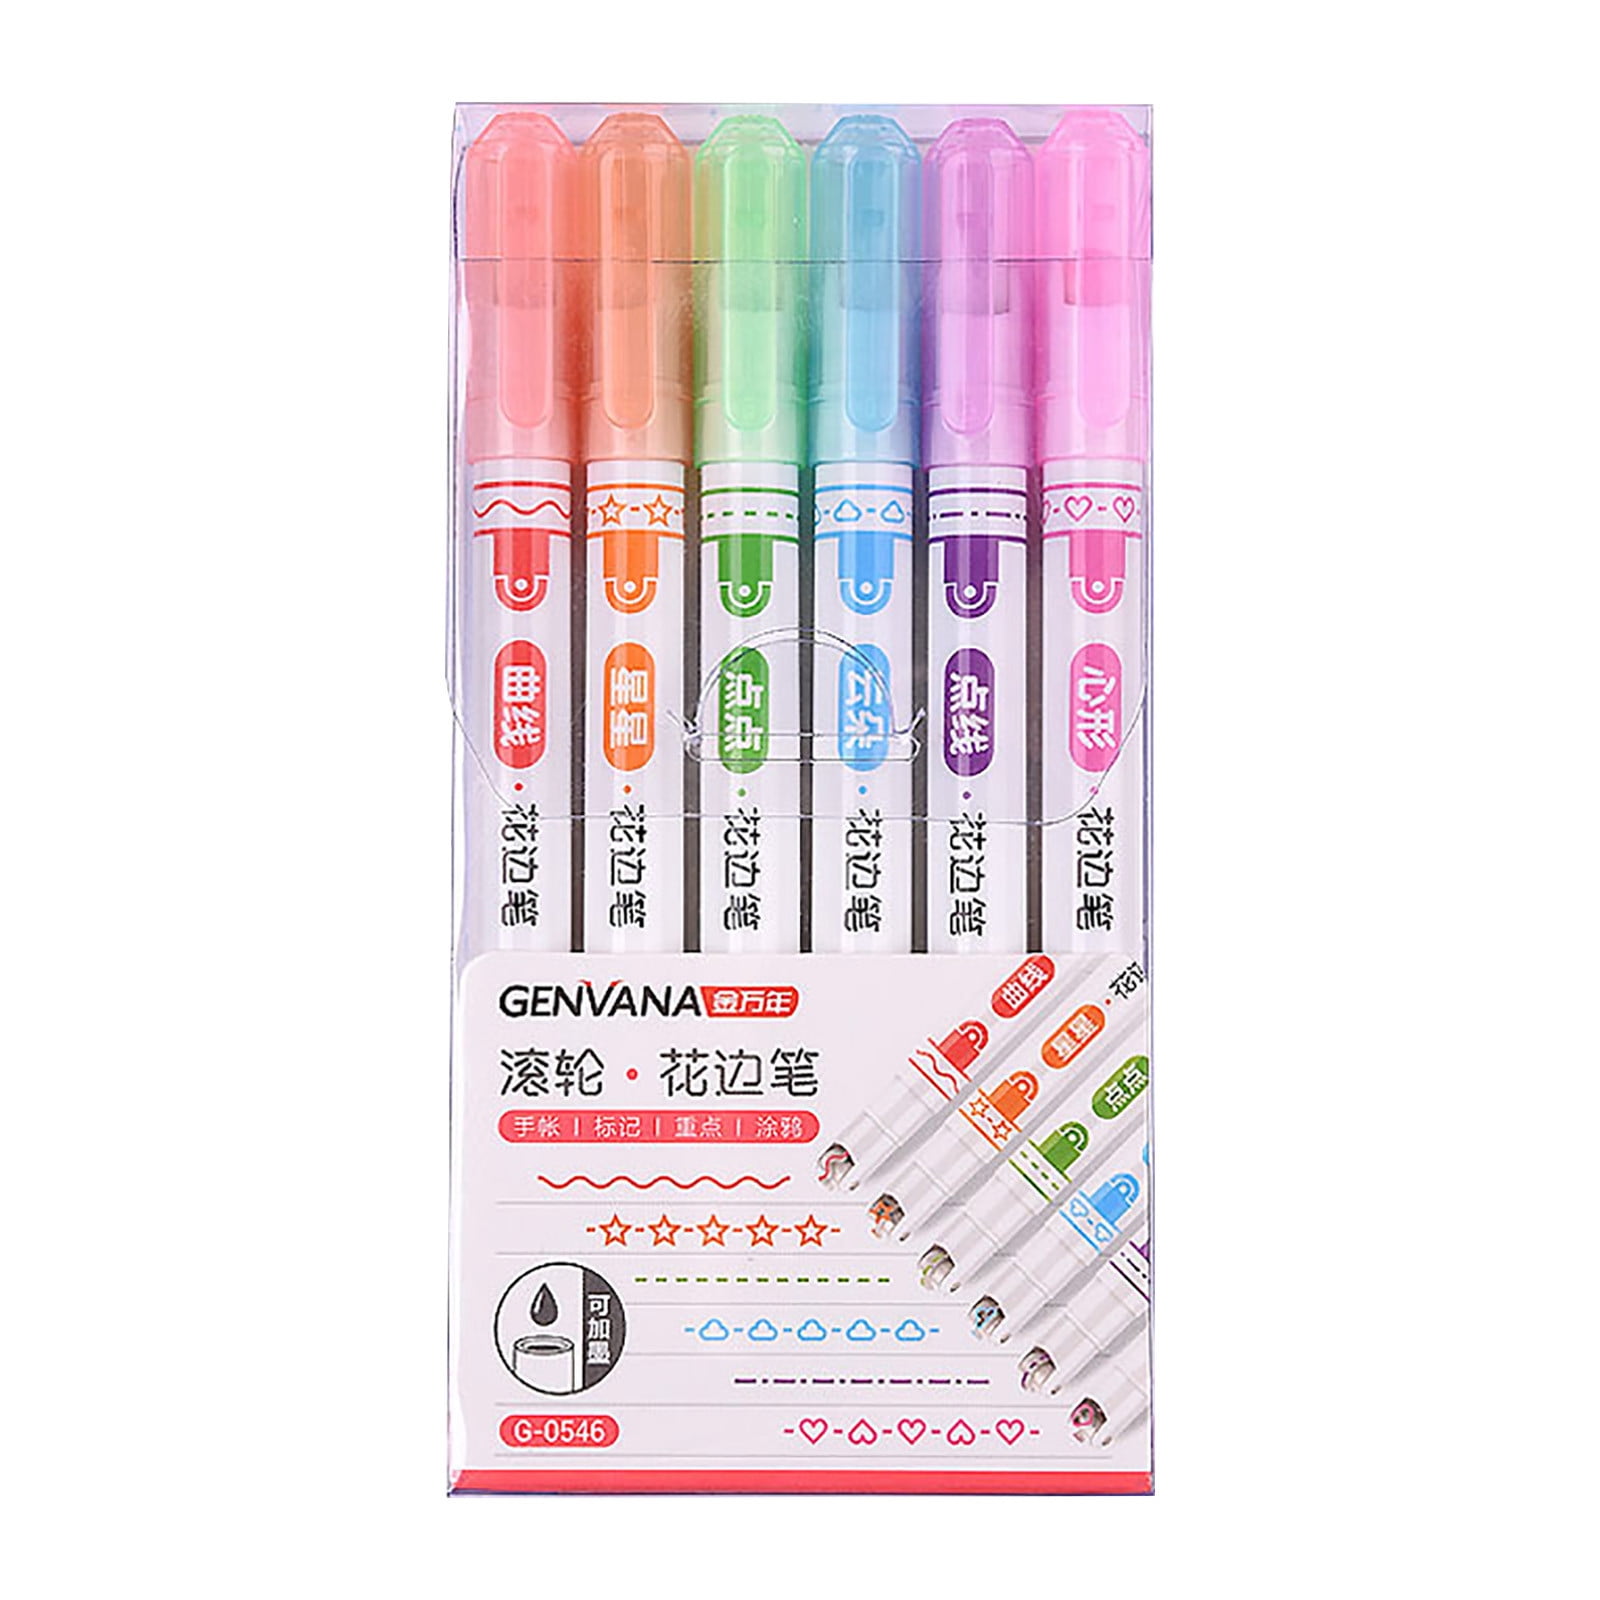 Vivid Vibes: Kids' Linear Color Pen Set (6 Pens) for Artistic